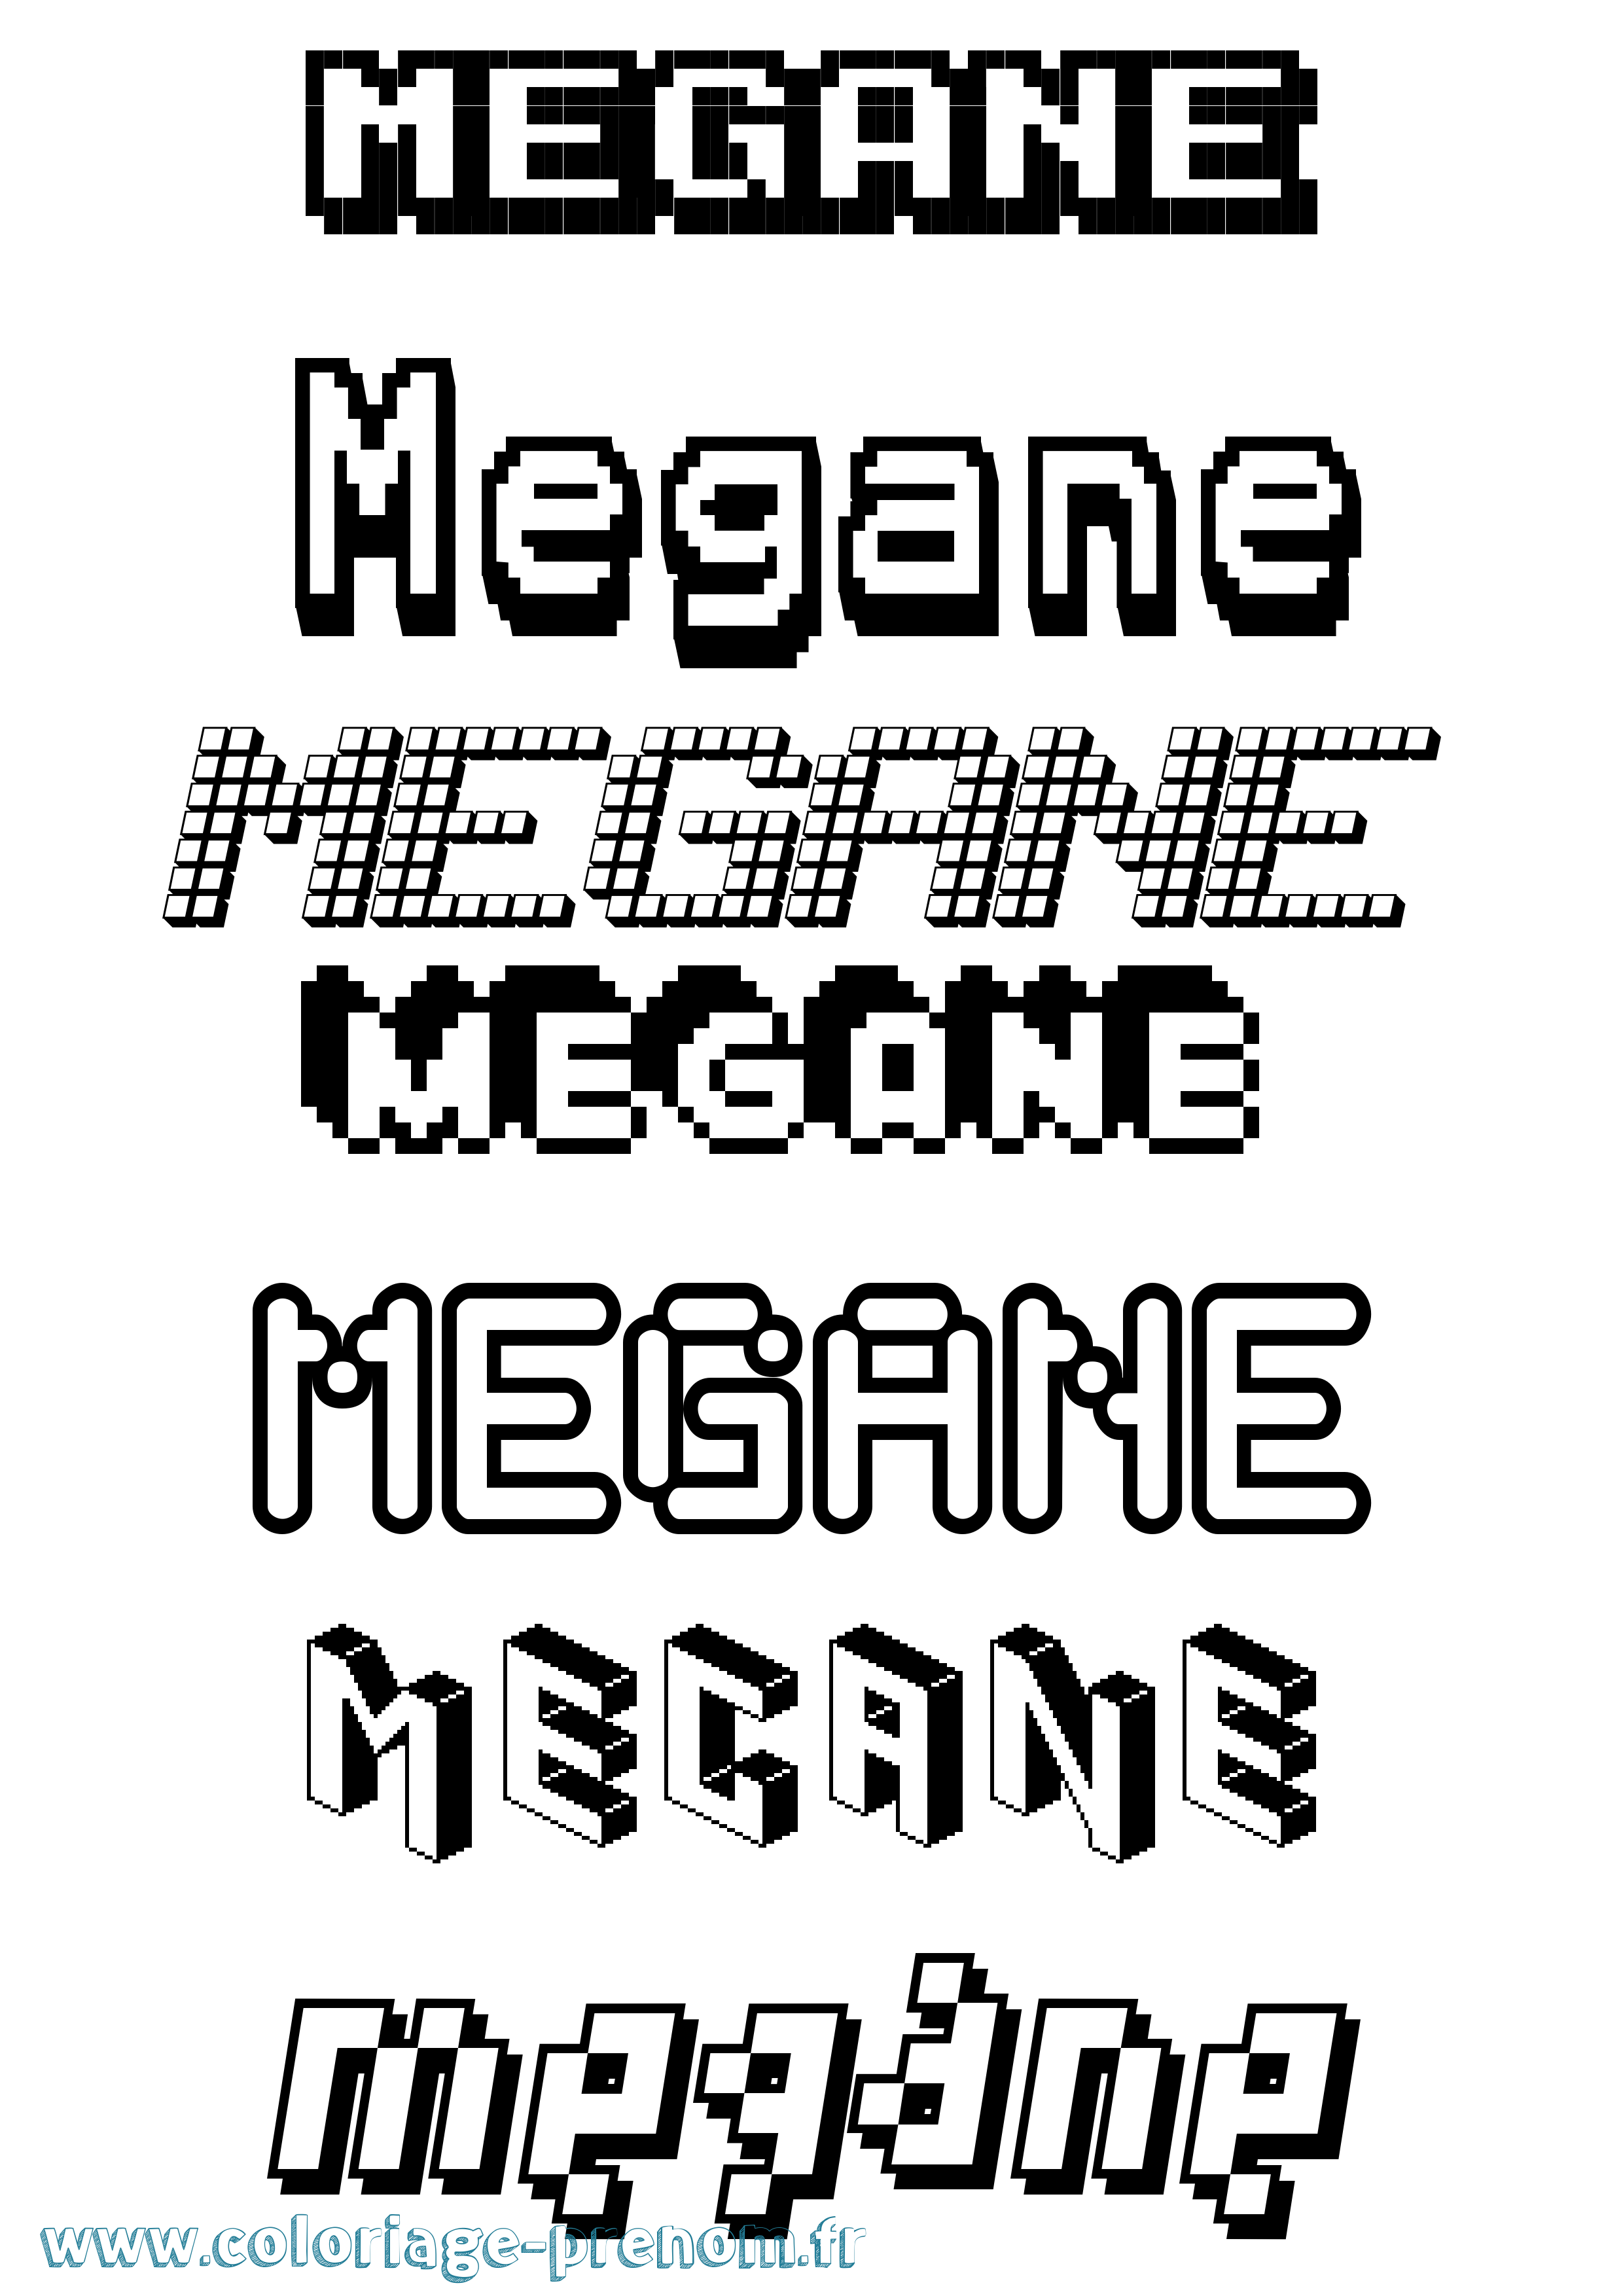 Coloriage prénom Megane Pixel